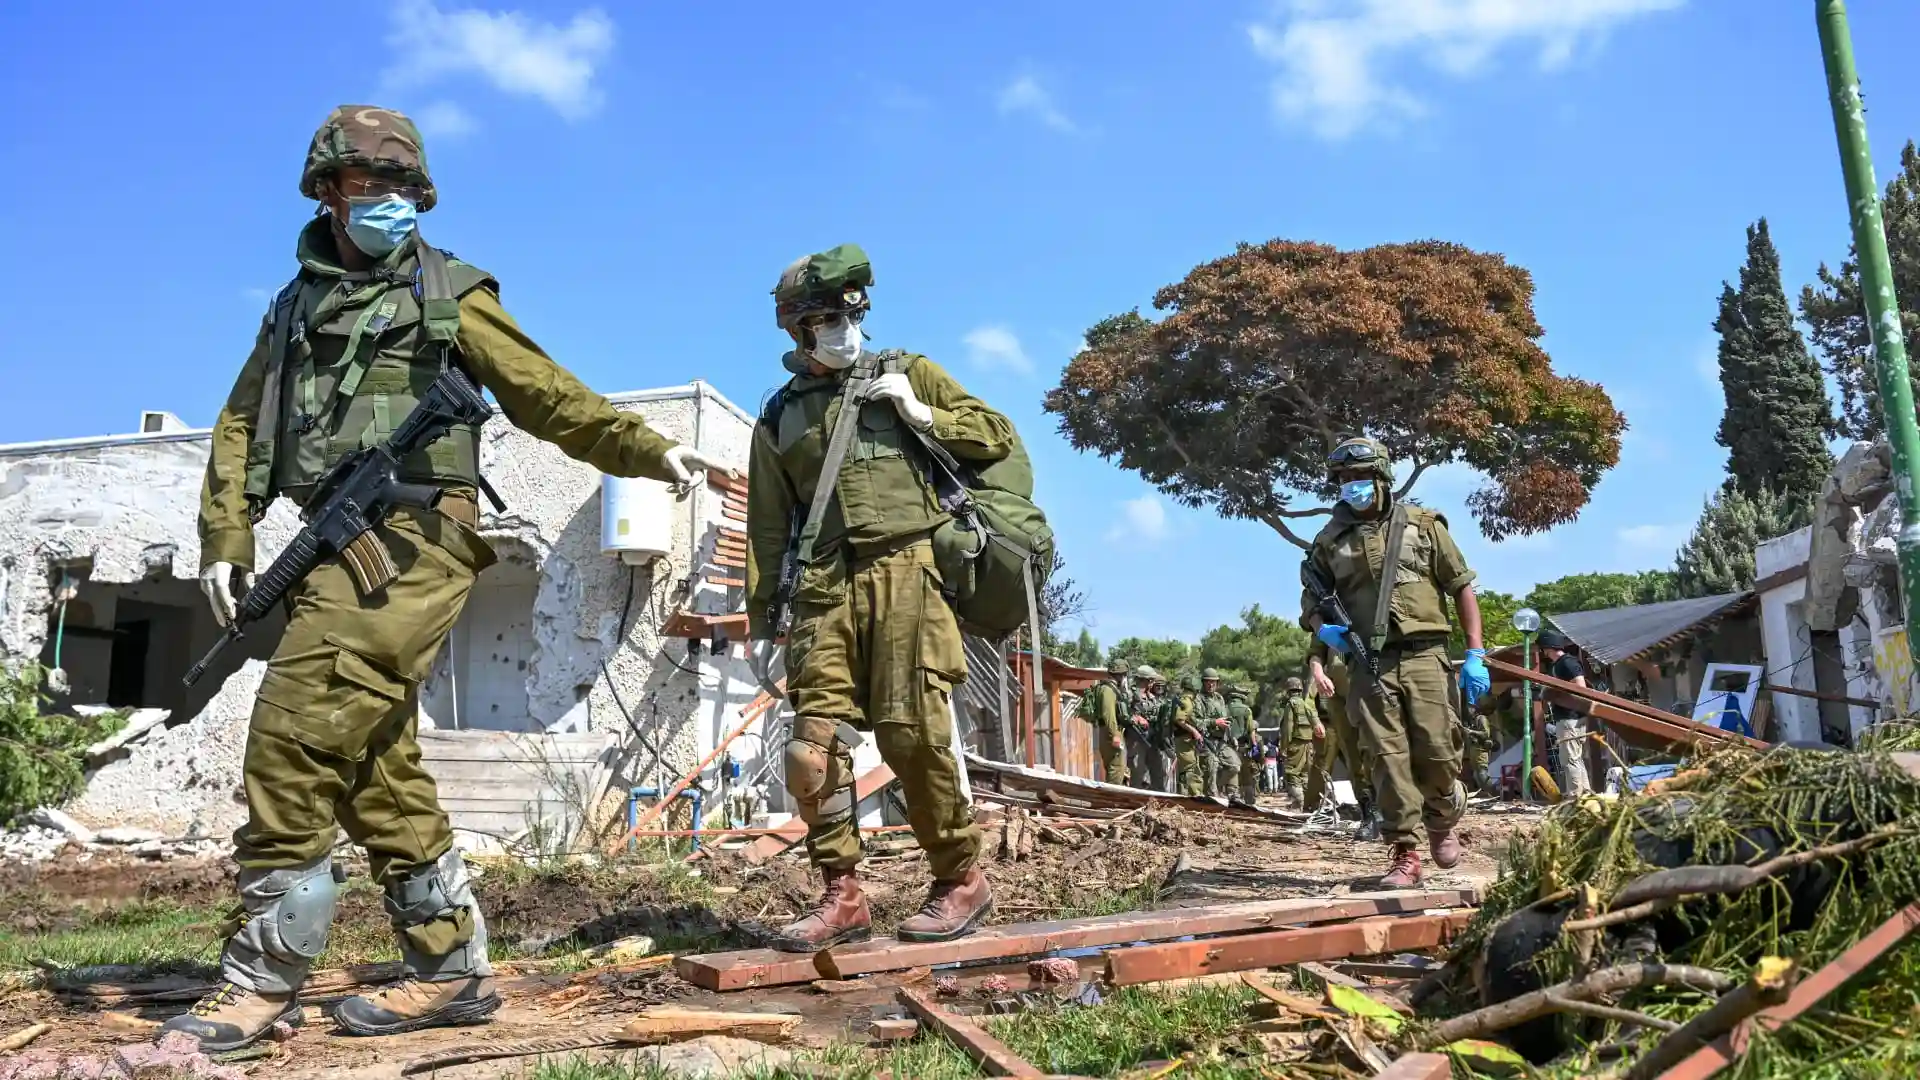 خرائط تحليلية لموقع حادث مقتل ثلاثة رهائن "بالخطأ" نشرها الجيش الإسرائيلي